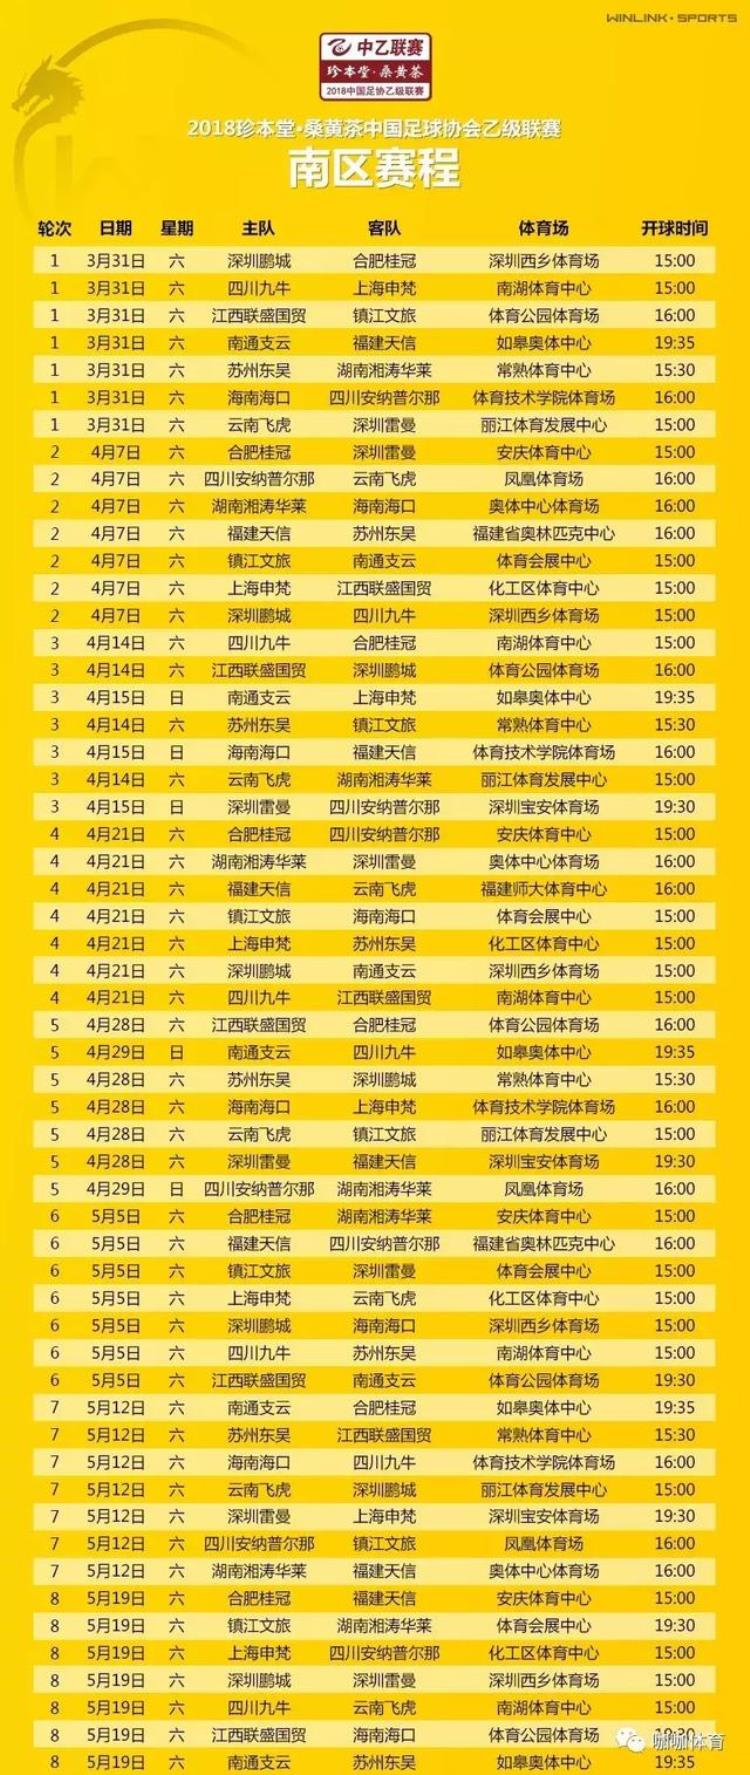 2018中国足球乙级联赛赛程详细表「2018中国足球乙级联赛赛程详细」